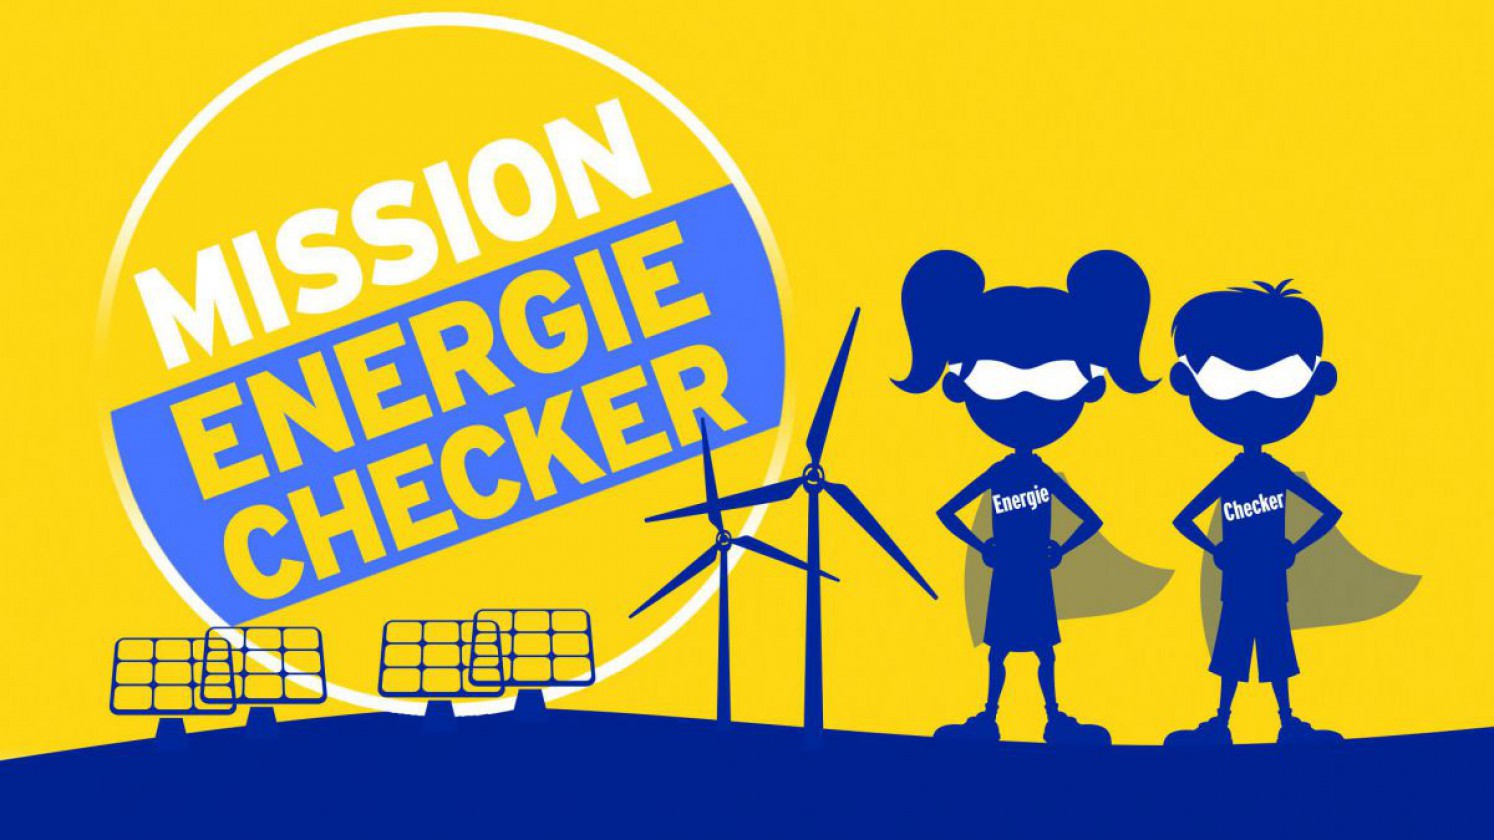 Logo zur Mission Energie Checker